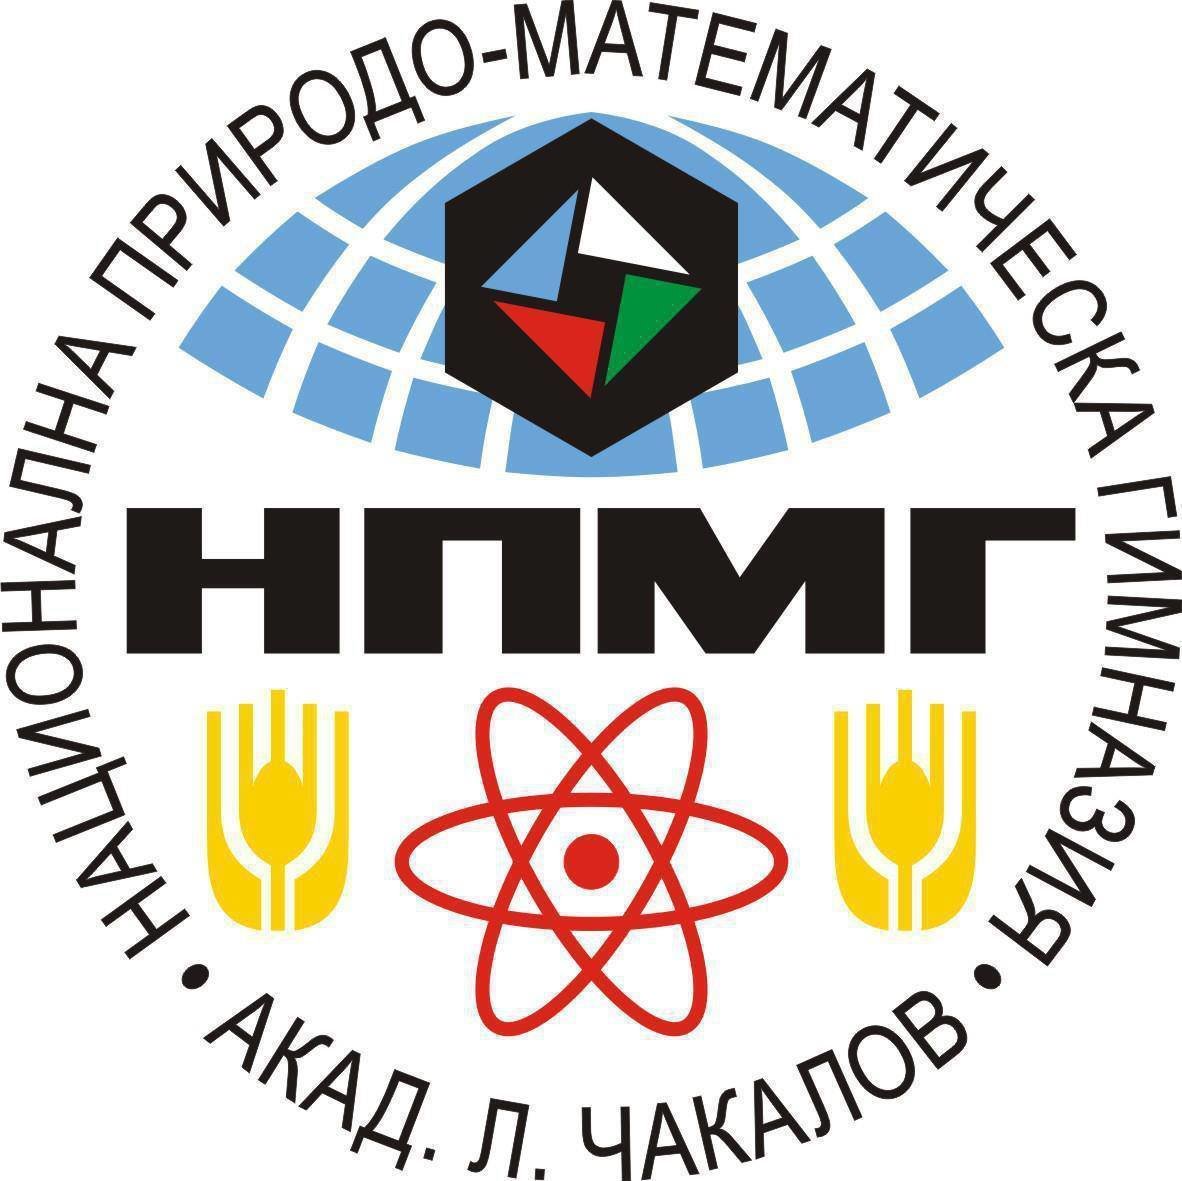 Националната природо-математическа гимназия в София обяви прием на ученици след